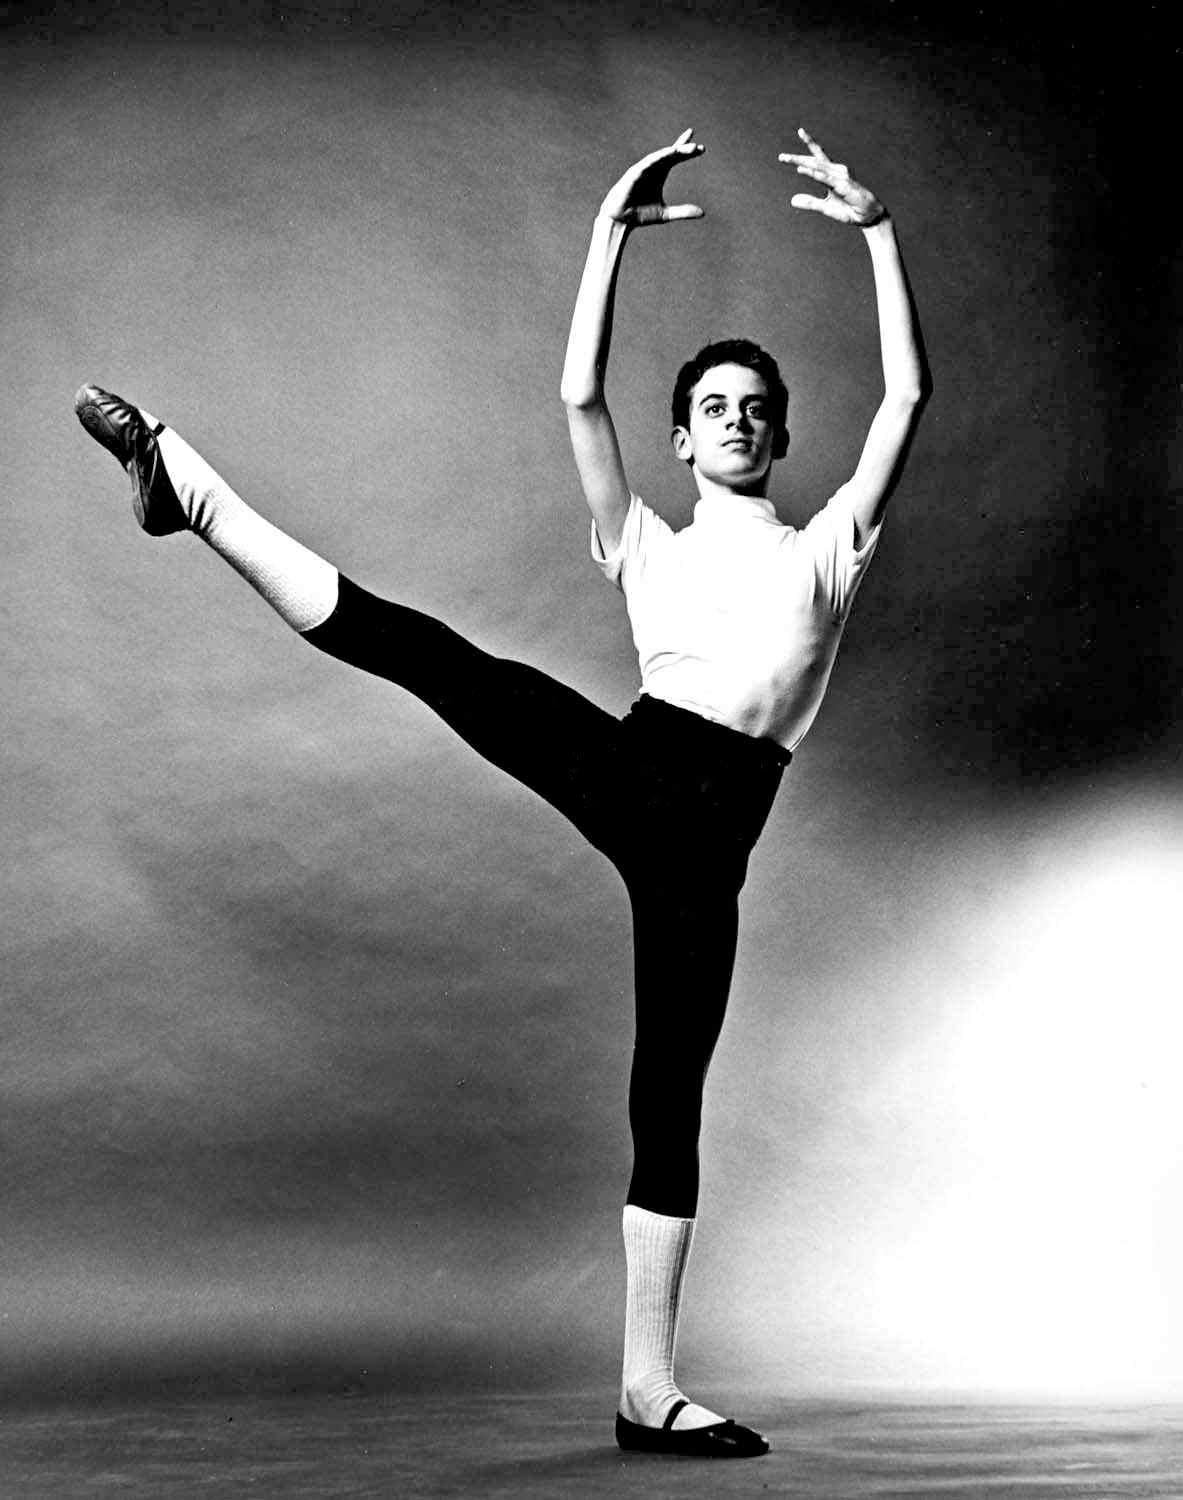 11 x 14" alte Silbergelatinefotografie von Fernando Bujones, 1968, Alter 12.  Bujones wurde schließlich der jüngste männliche Haupttänzer in der Geschichte des American Ballet Theatre. Signiert von Jack Mitchell auf der Rückseite des Drucks. Kommt